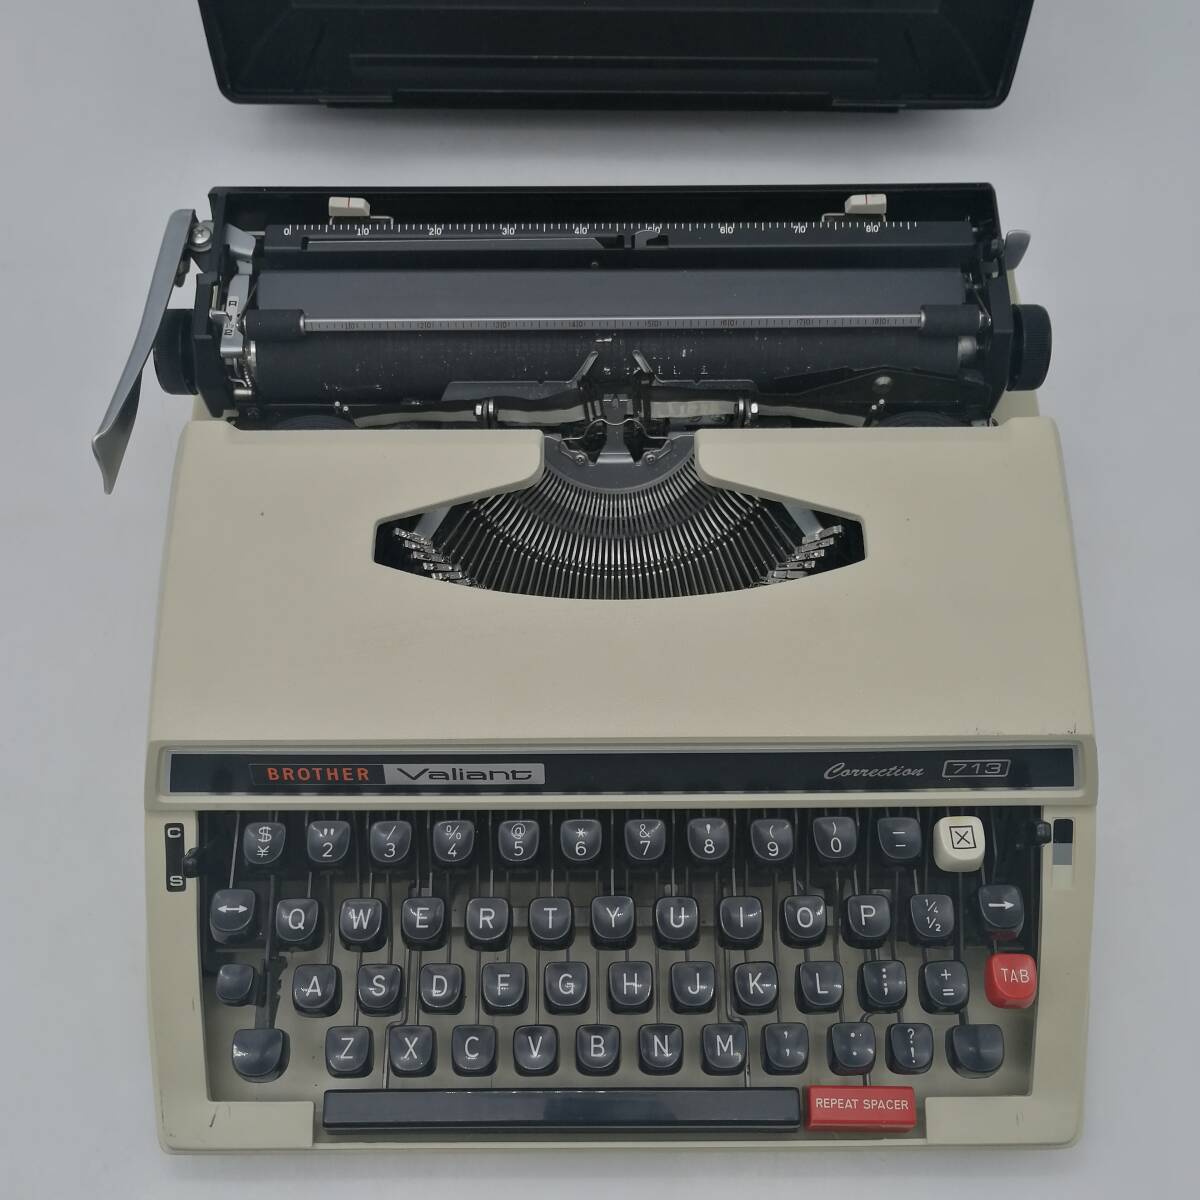 t2726 BROTHER ブラザー Valiant タイプライター コレクション 713 昭和レトロ アンティーク 中古品 現状品 電化製品の画像2